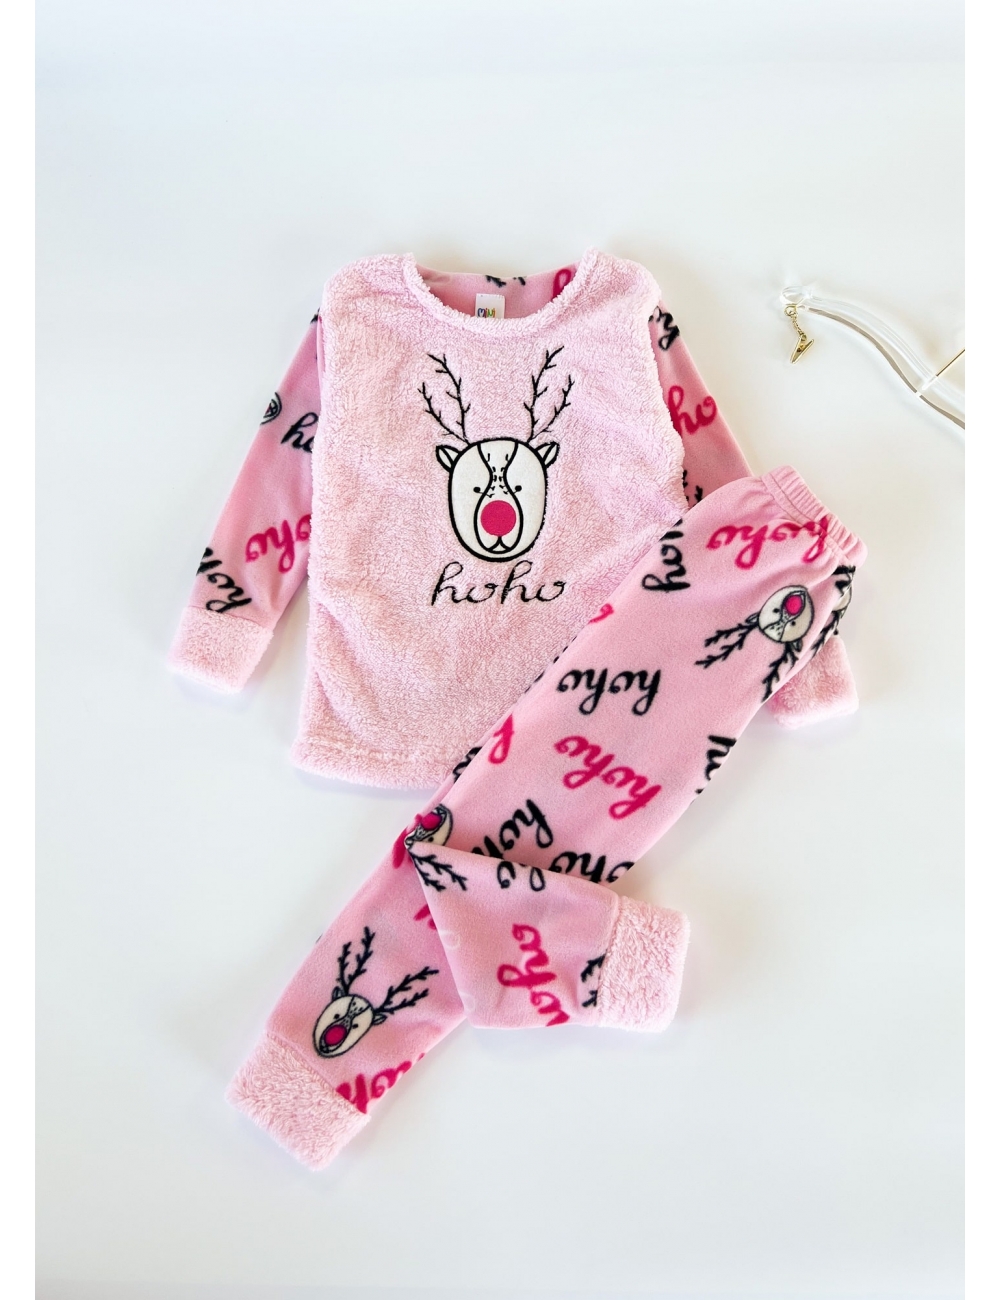 Пижама для двочки махровая тм " Mini Moon" олень розовая